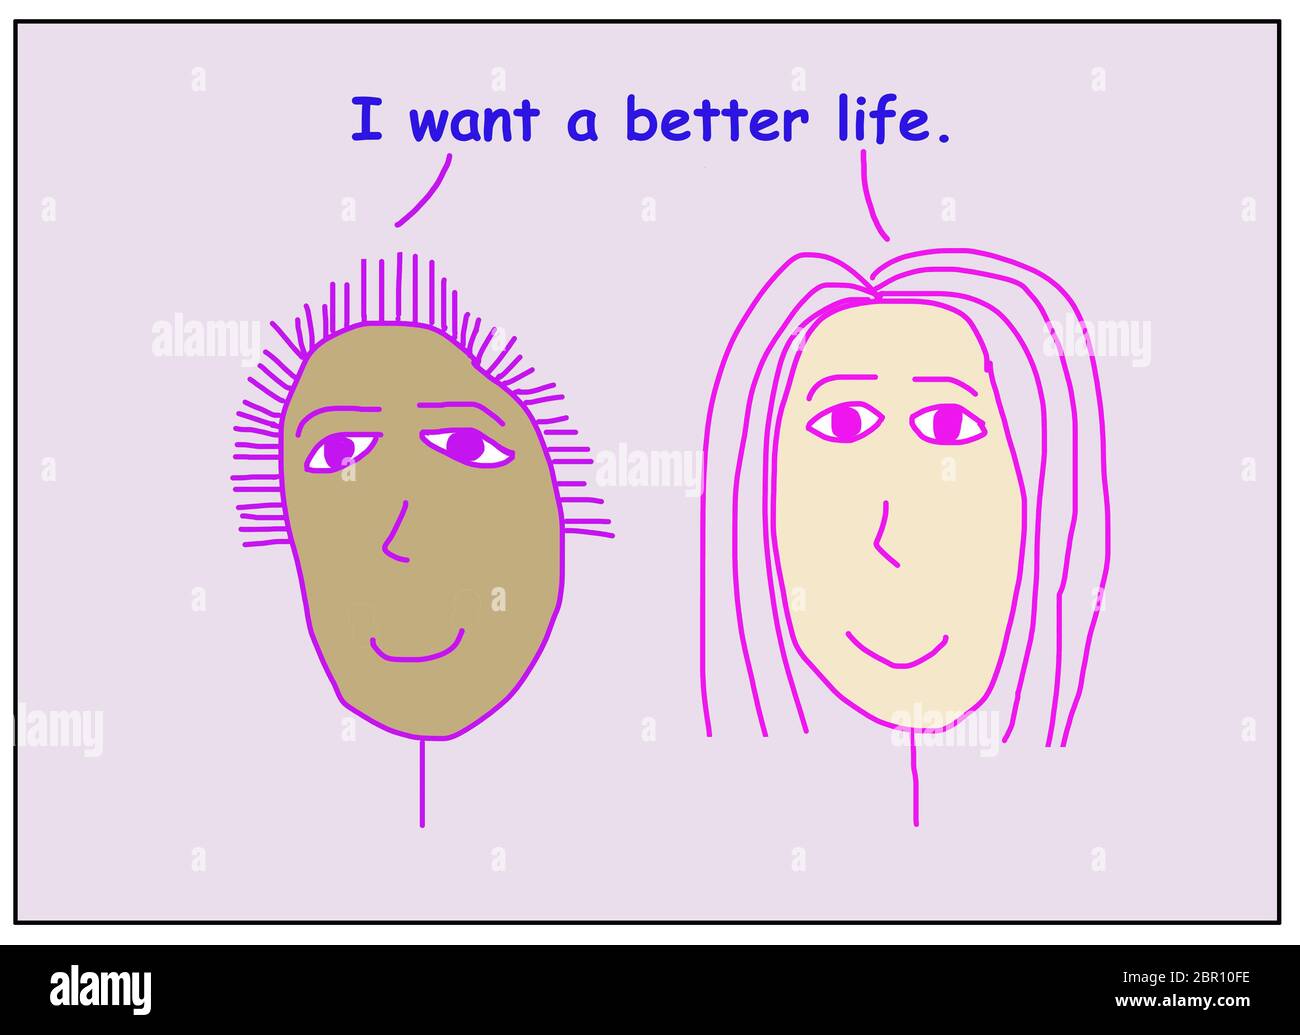 Farbe Cartoon von zwei lächelnden, schönen und ethnisch vielfältigen Frauen besagt, dass ich ein besseres Leben wollen. Stockfoto